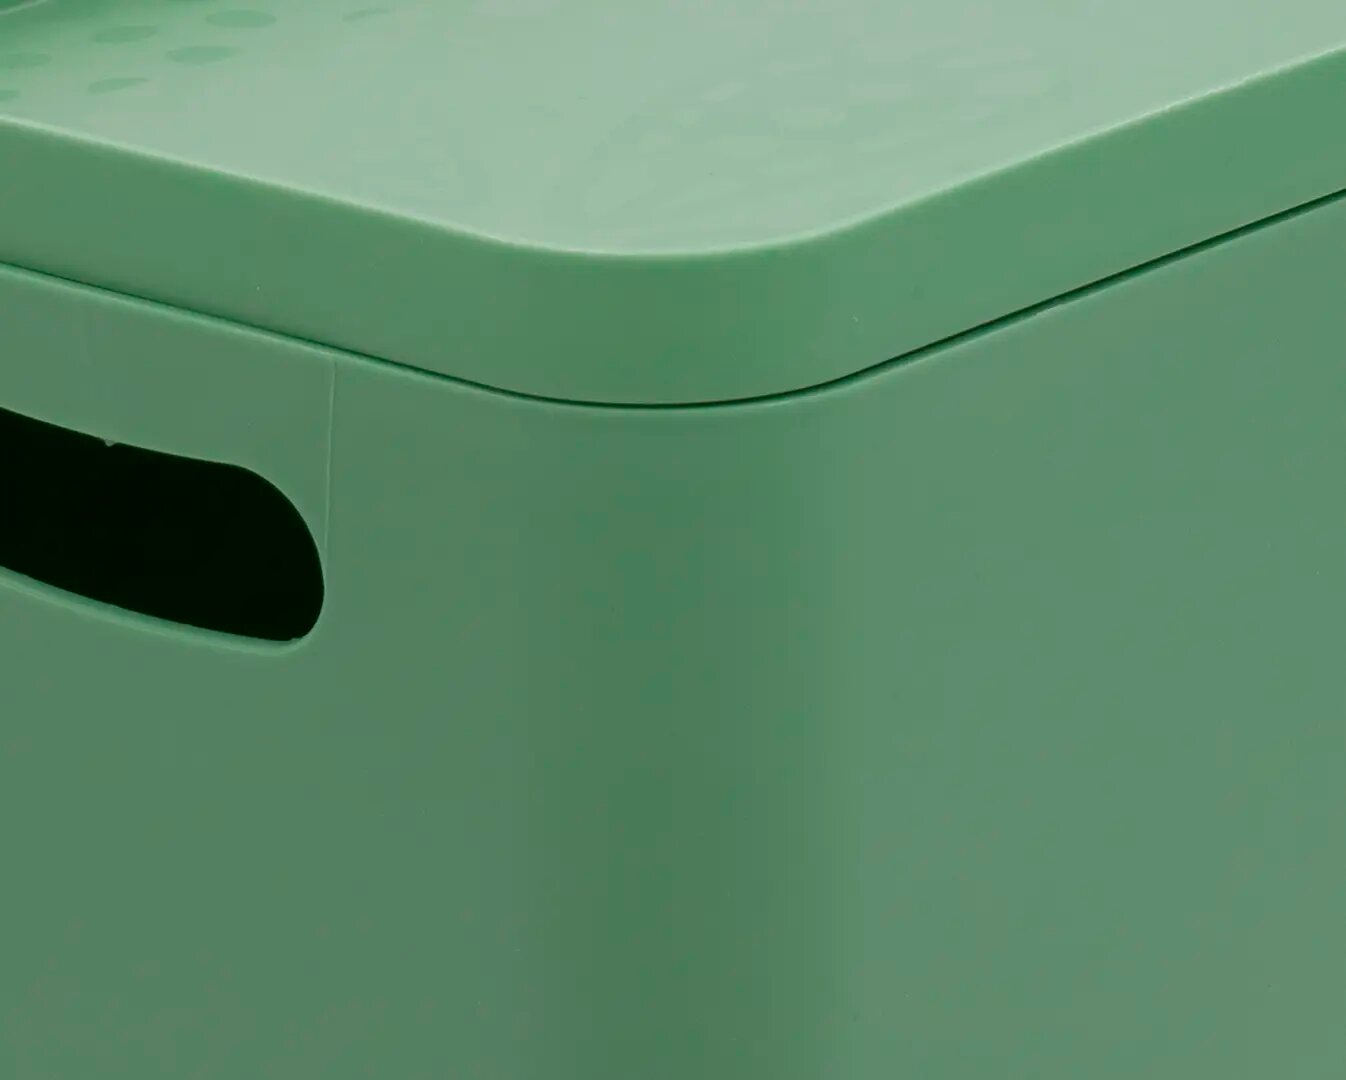 Органайзер для хранения Berossi 16x13x23 см 2.4 л пластик цвет зеленый